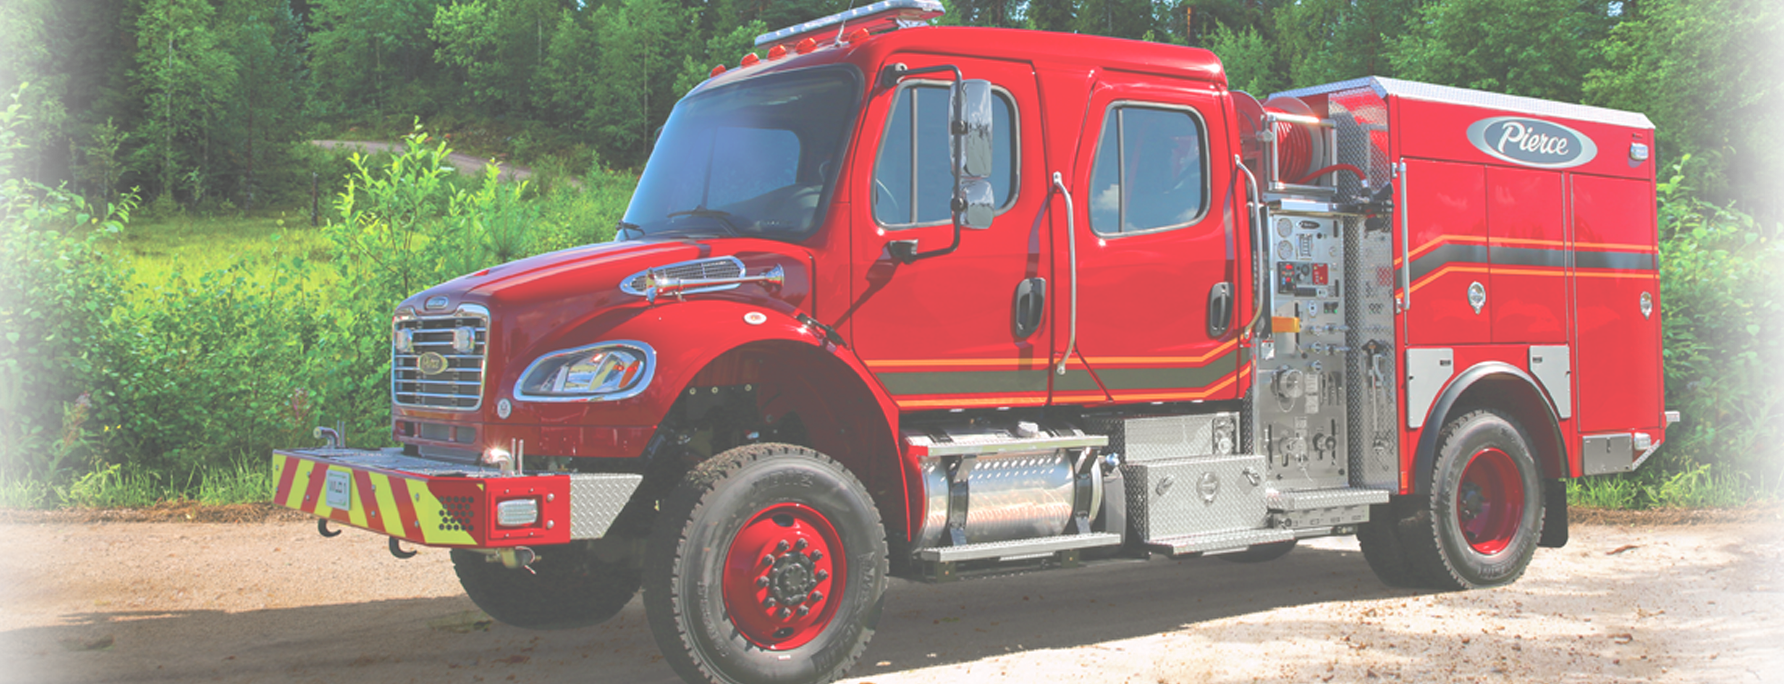 wildland fire truck